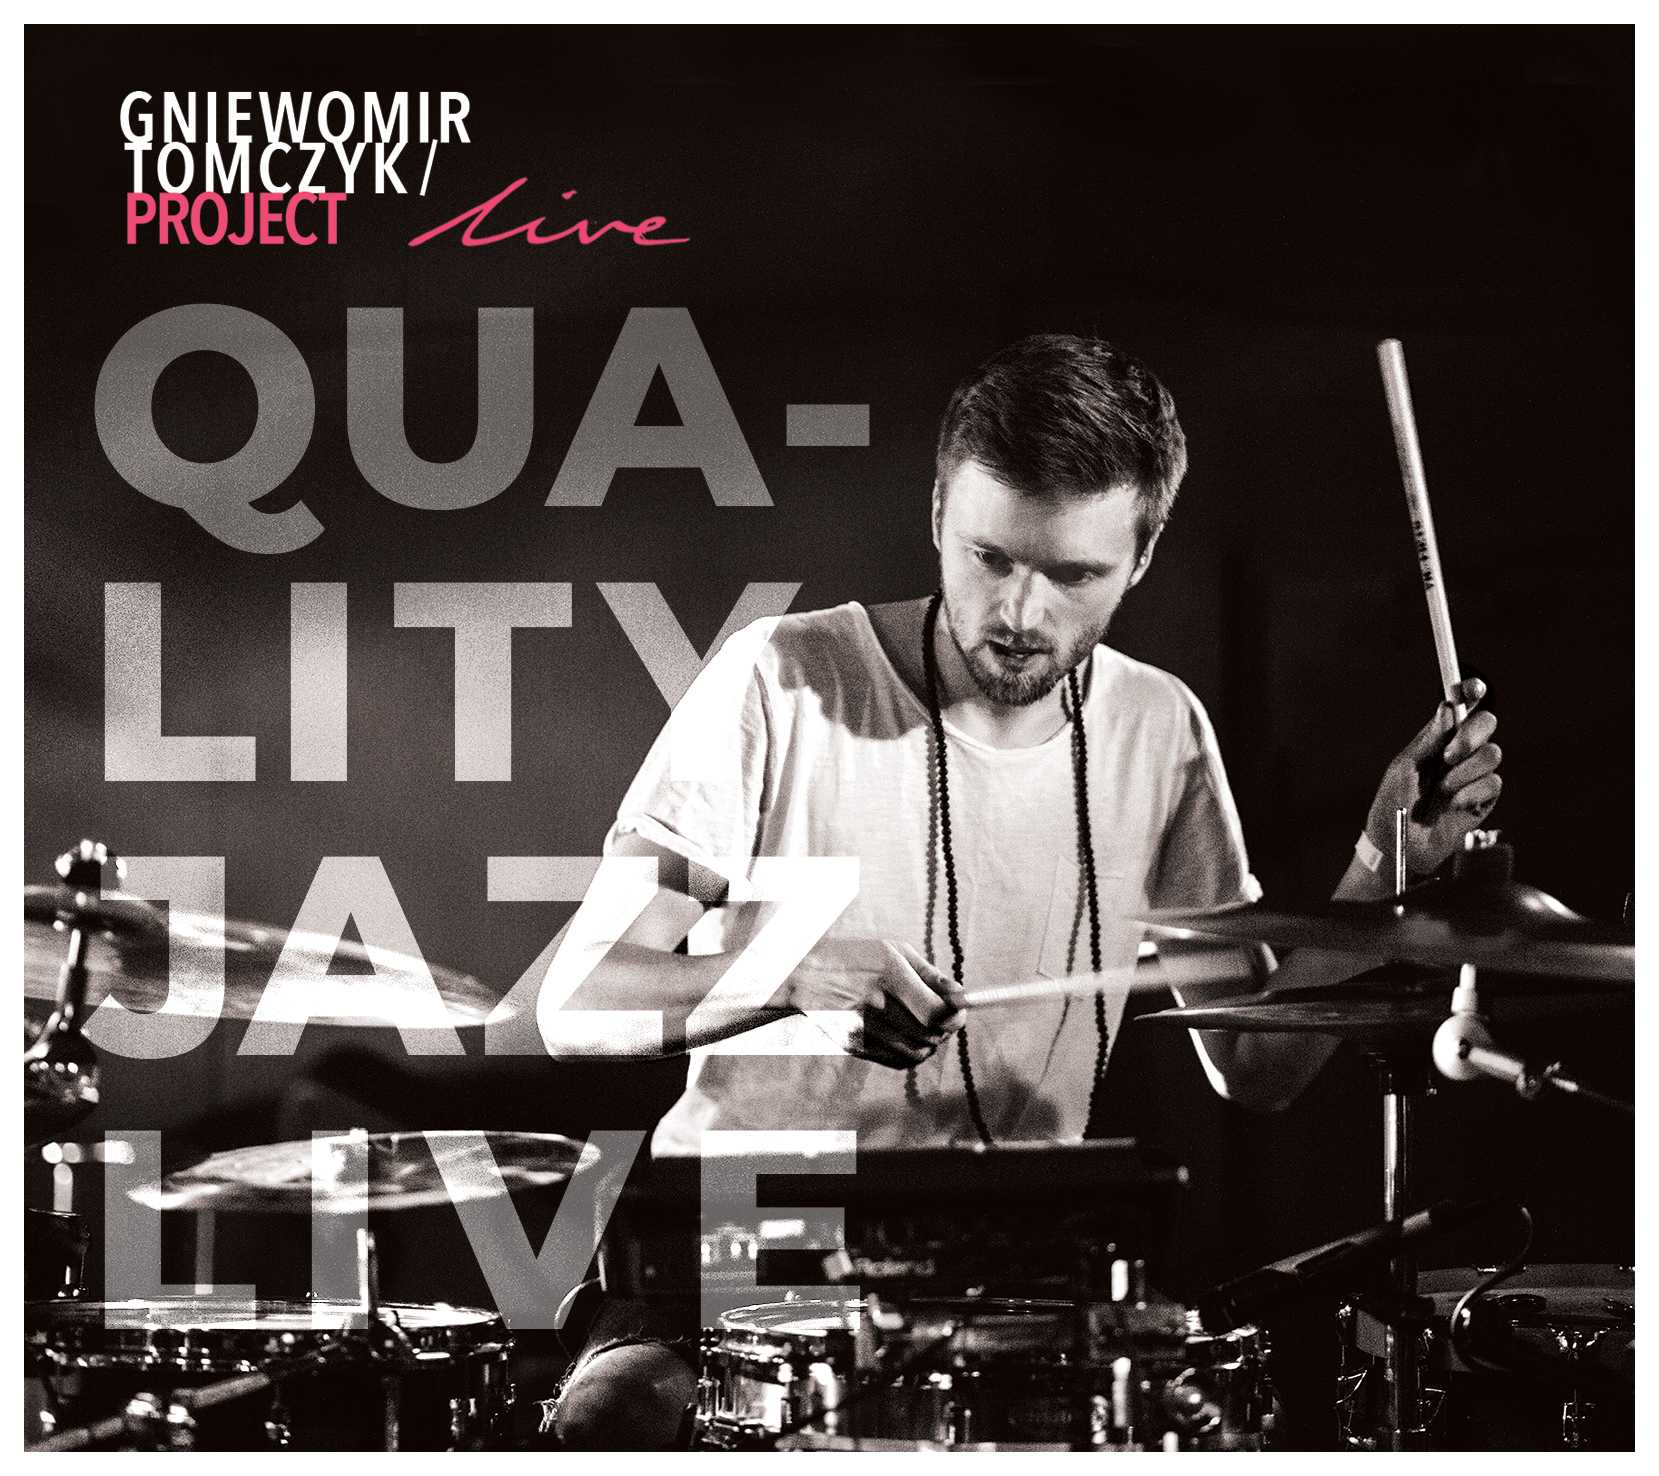 Gniewomir Tomczyk / Project Live - Quality Jazz Live | SJRecords